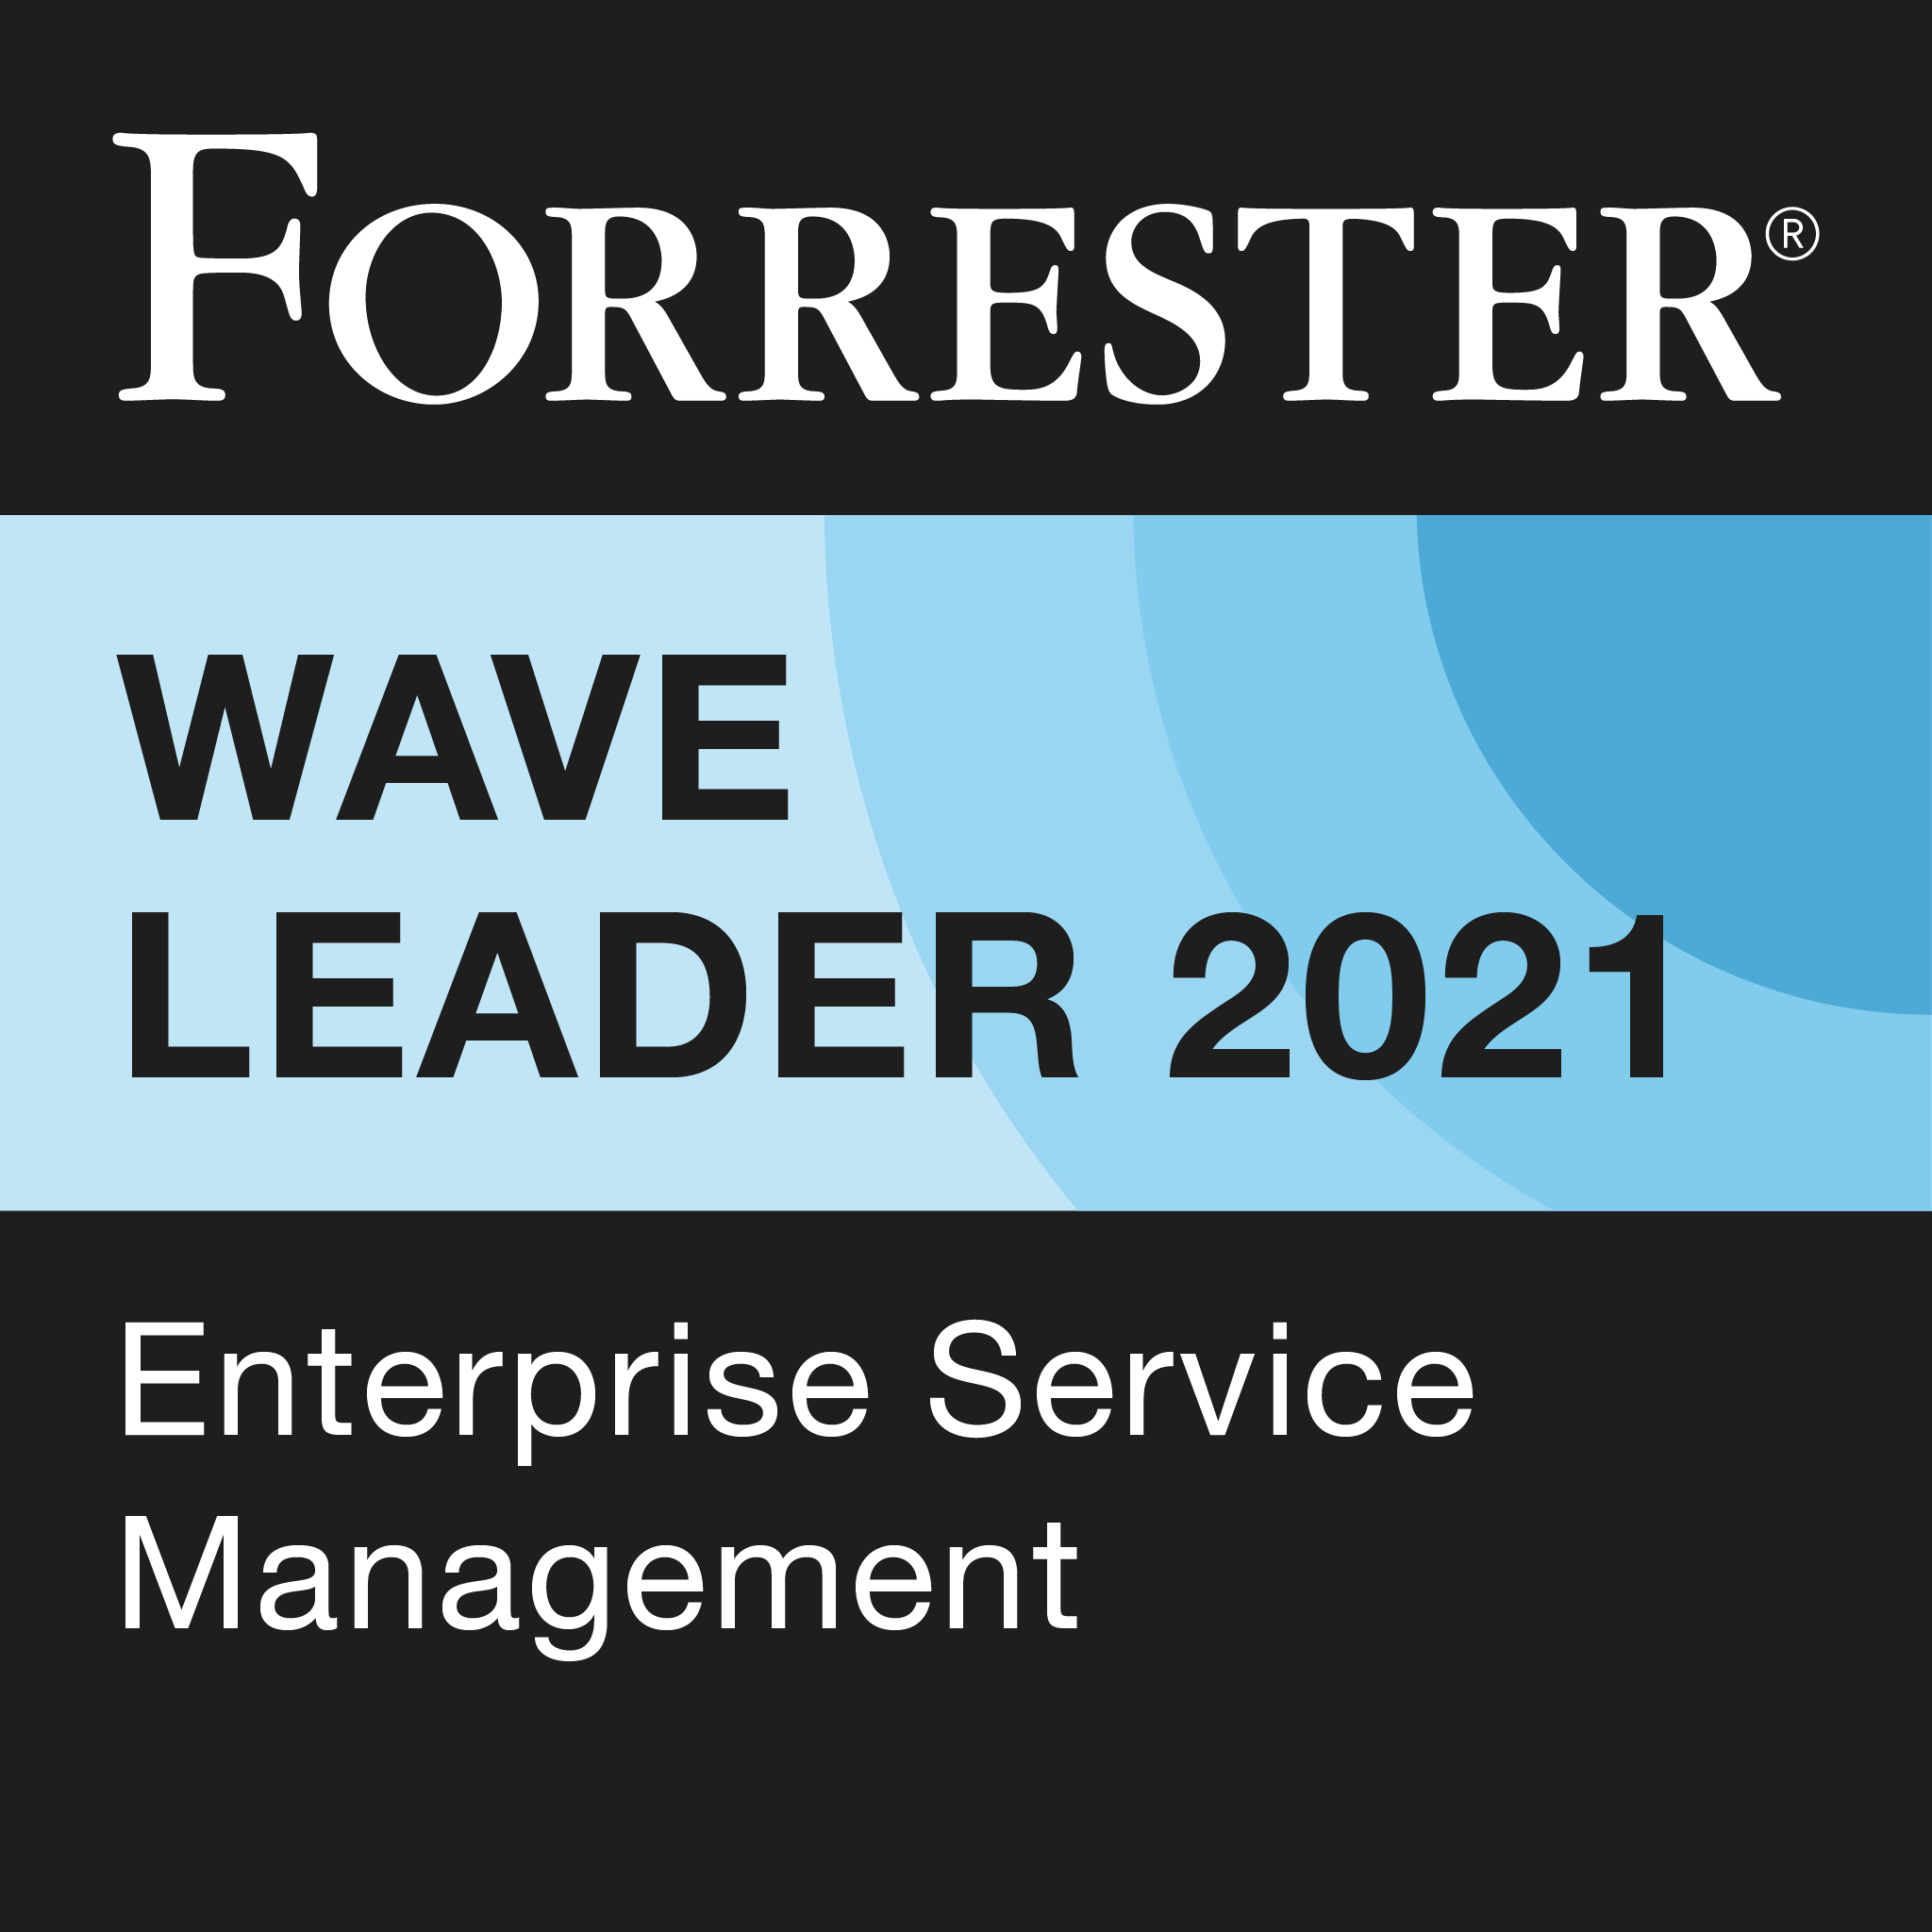 Nominata "Leader" in Forrester Wave: Enterprise Service Management 2021